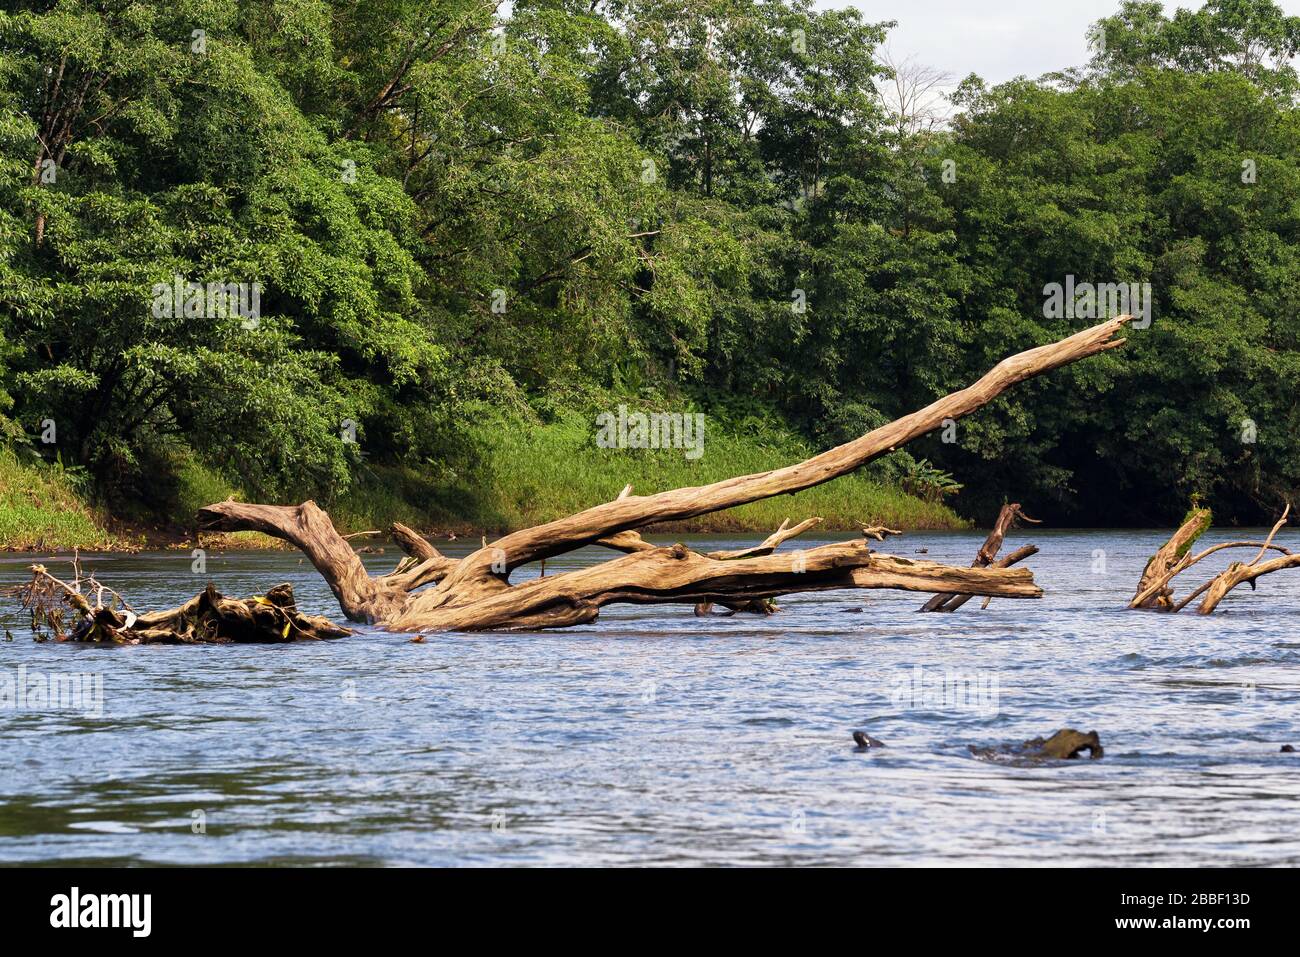 Toter Baum in der Mitte des Rio Sarapiqui Gewässer. Tropisches und wildes Flusslebensraumkonzept. Puerto Viejo de Sarapiqui, Costa Rica. Stockfoto